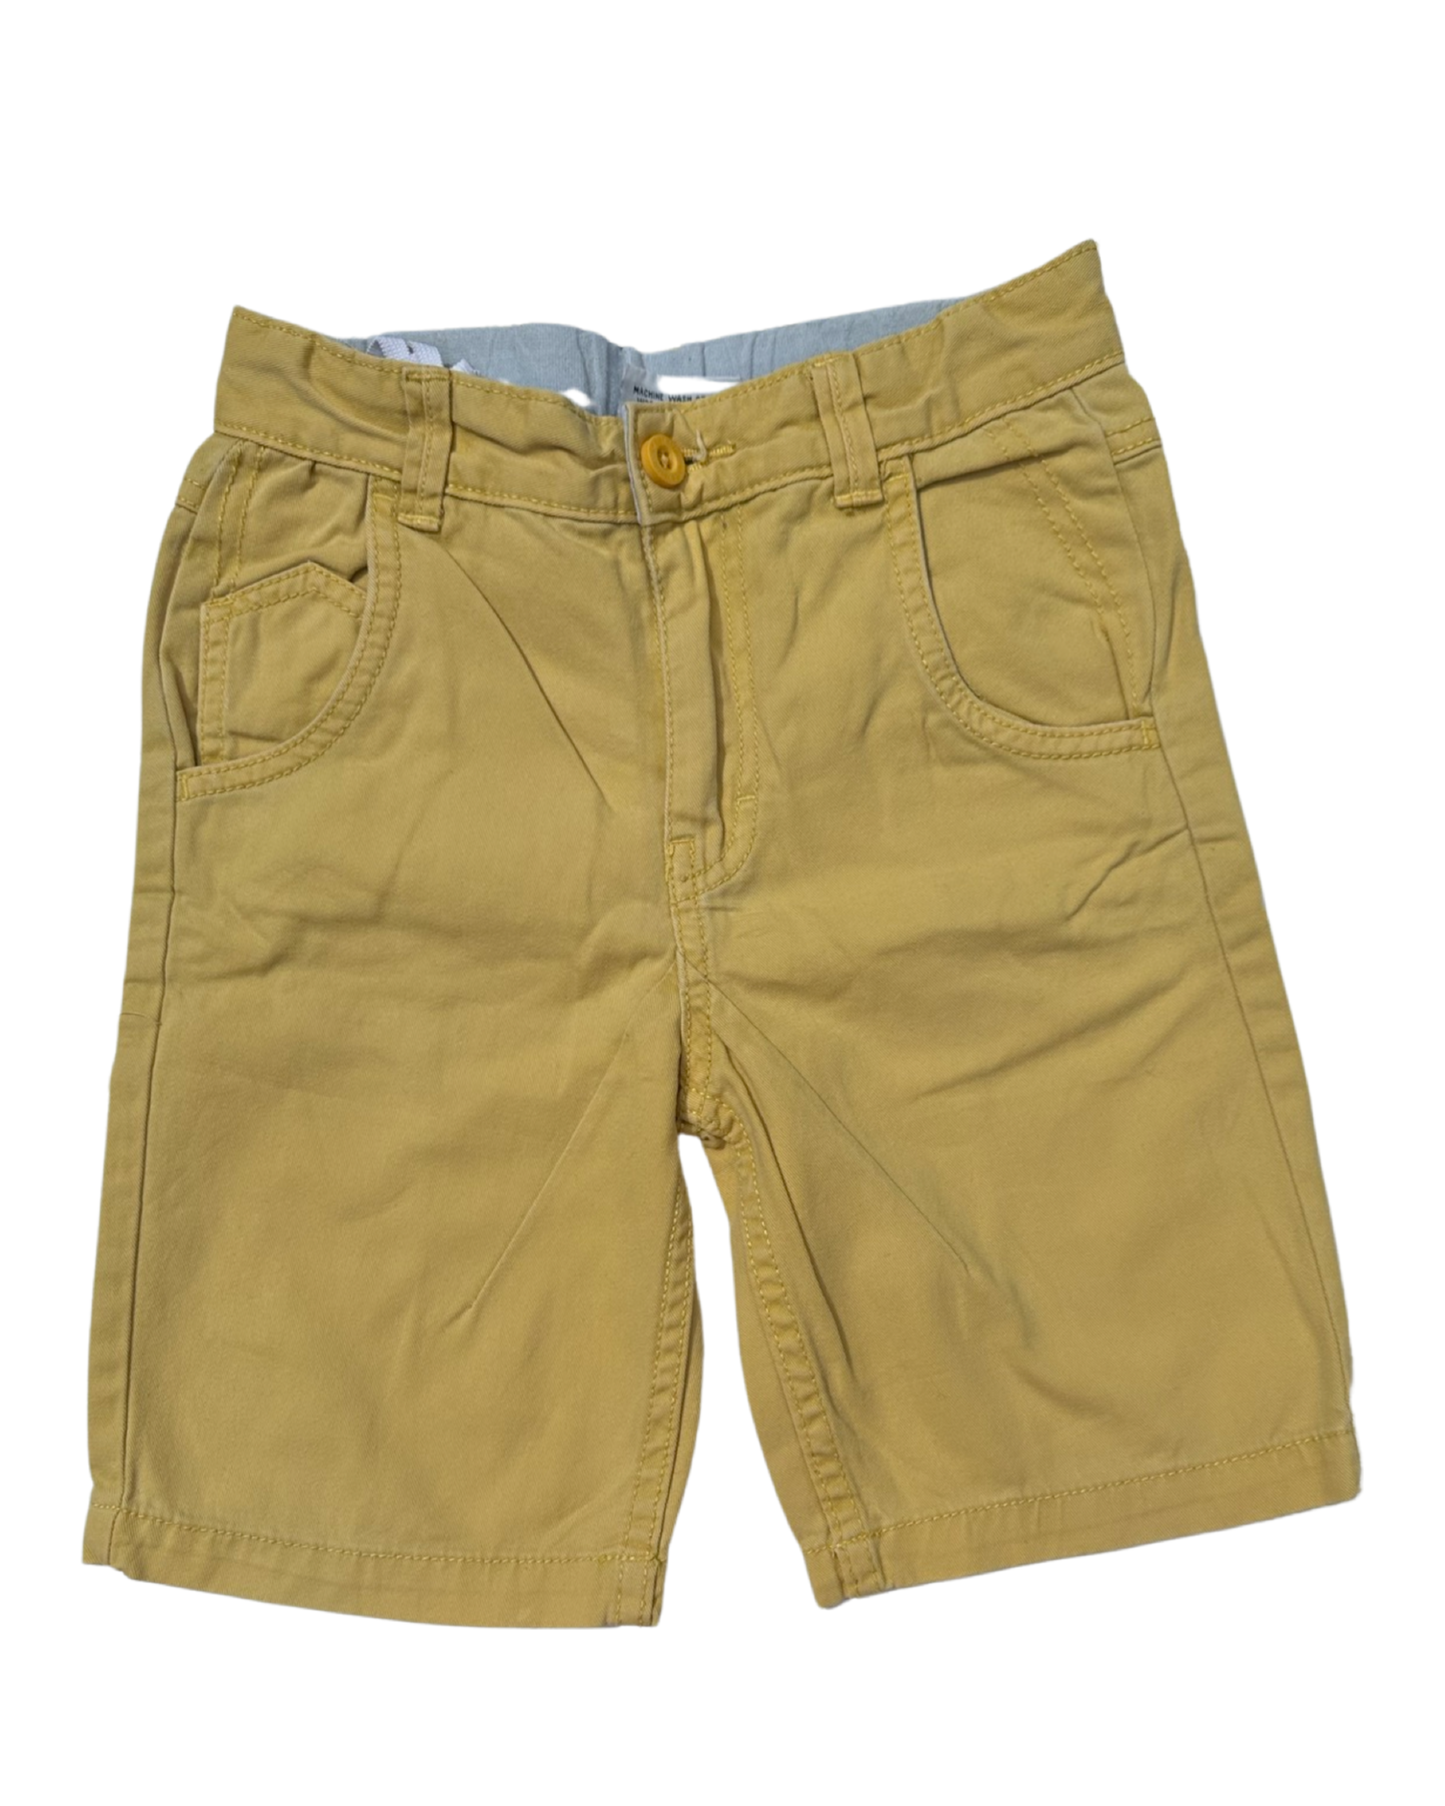 Westside yellow chino shorts (size 5-6yrs)